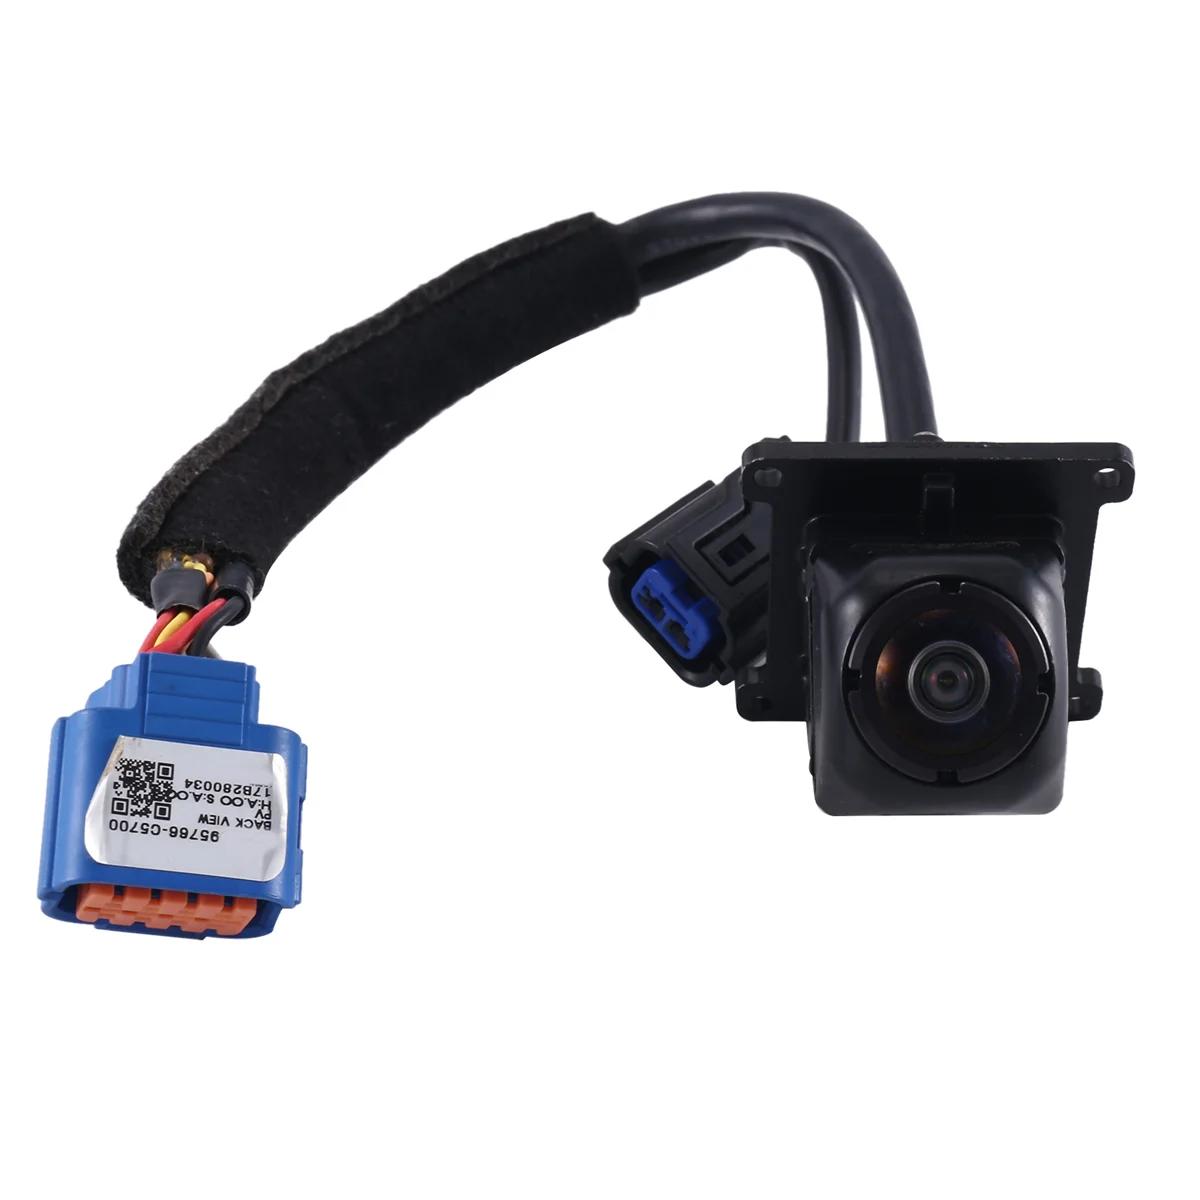 

95760-C5700 New Rear View Camera Reverse Camera Parking ist Backup Camera for KIA Sorento